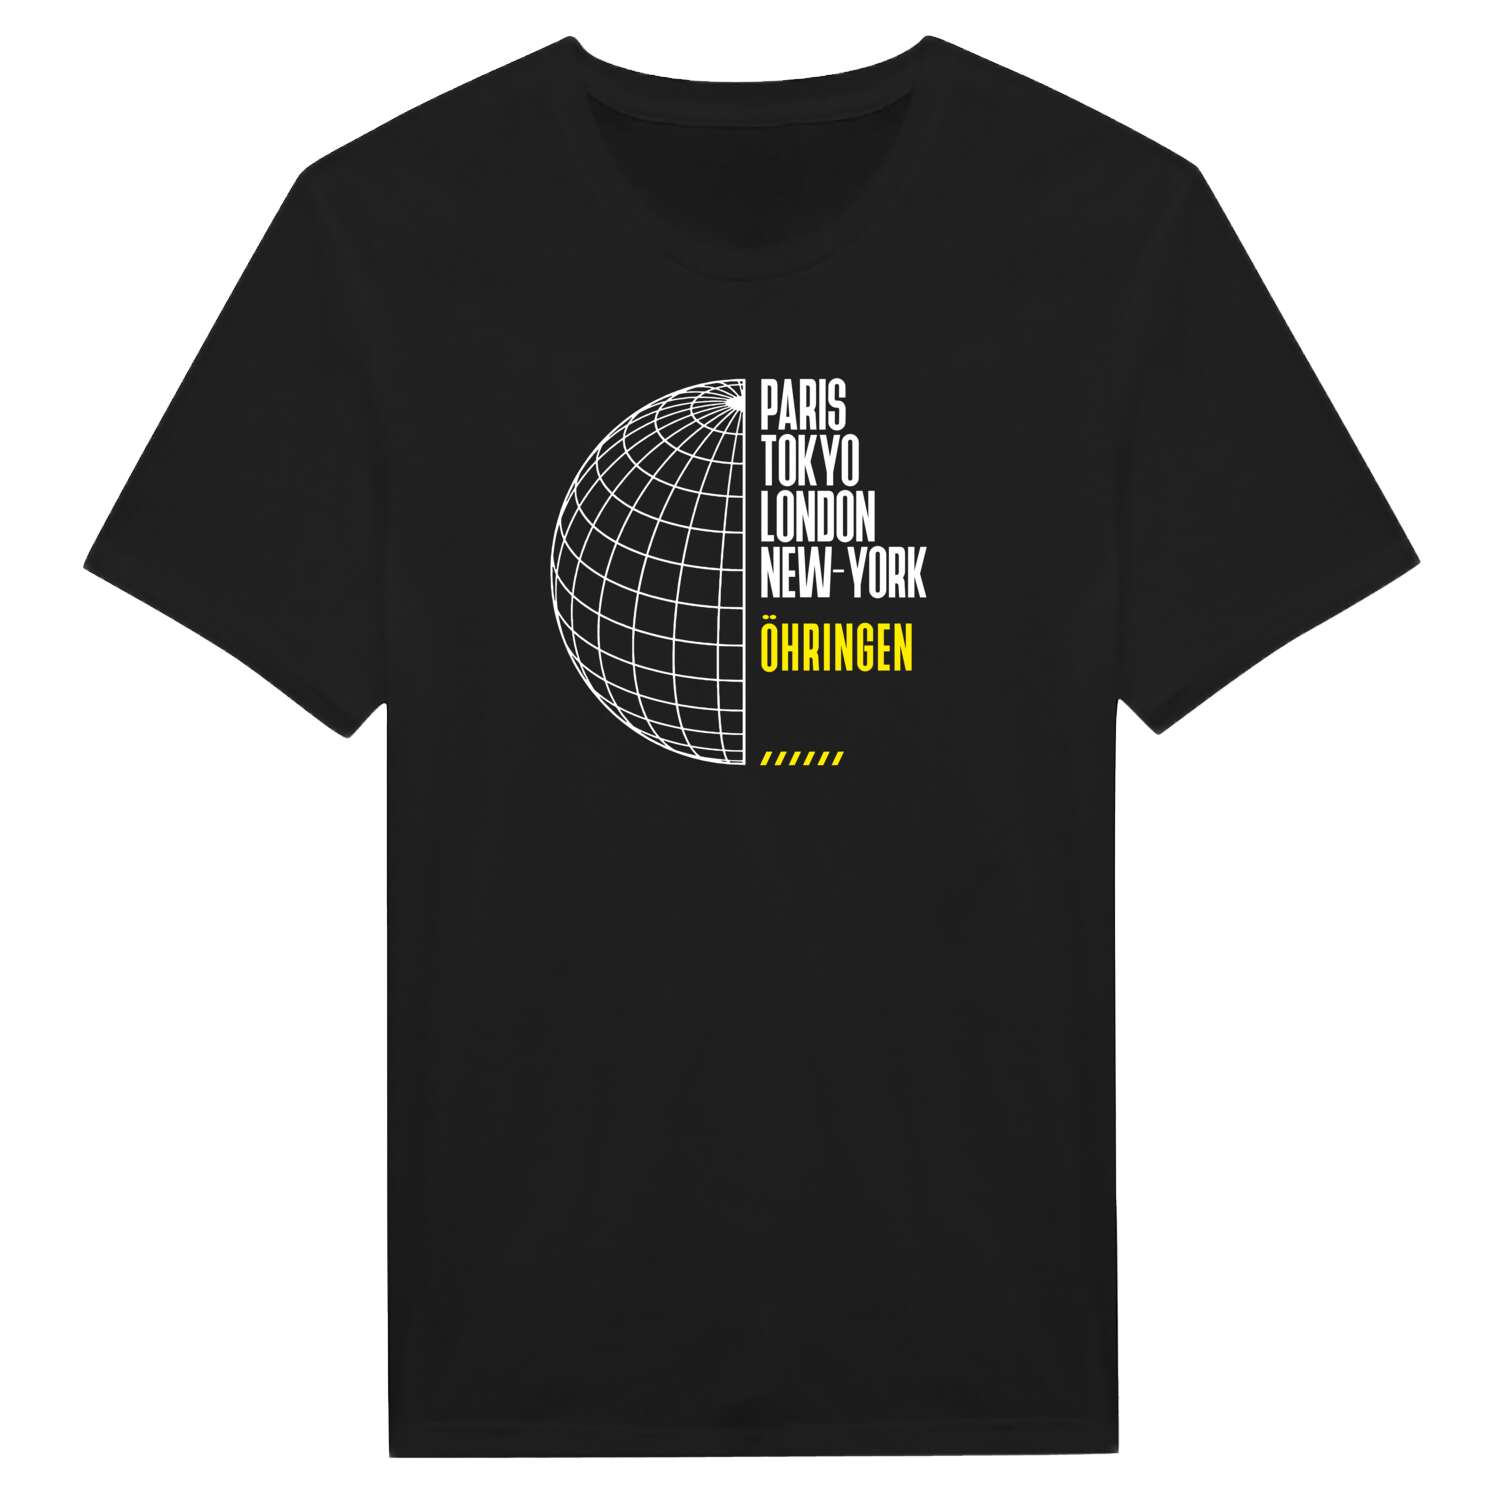 Öhringen T-Shirt »Paris Tokyo London«